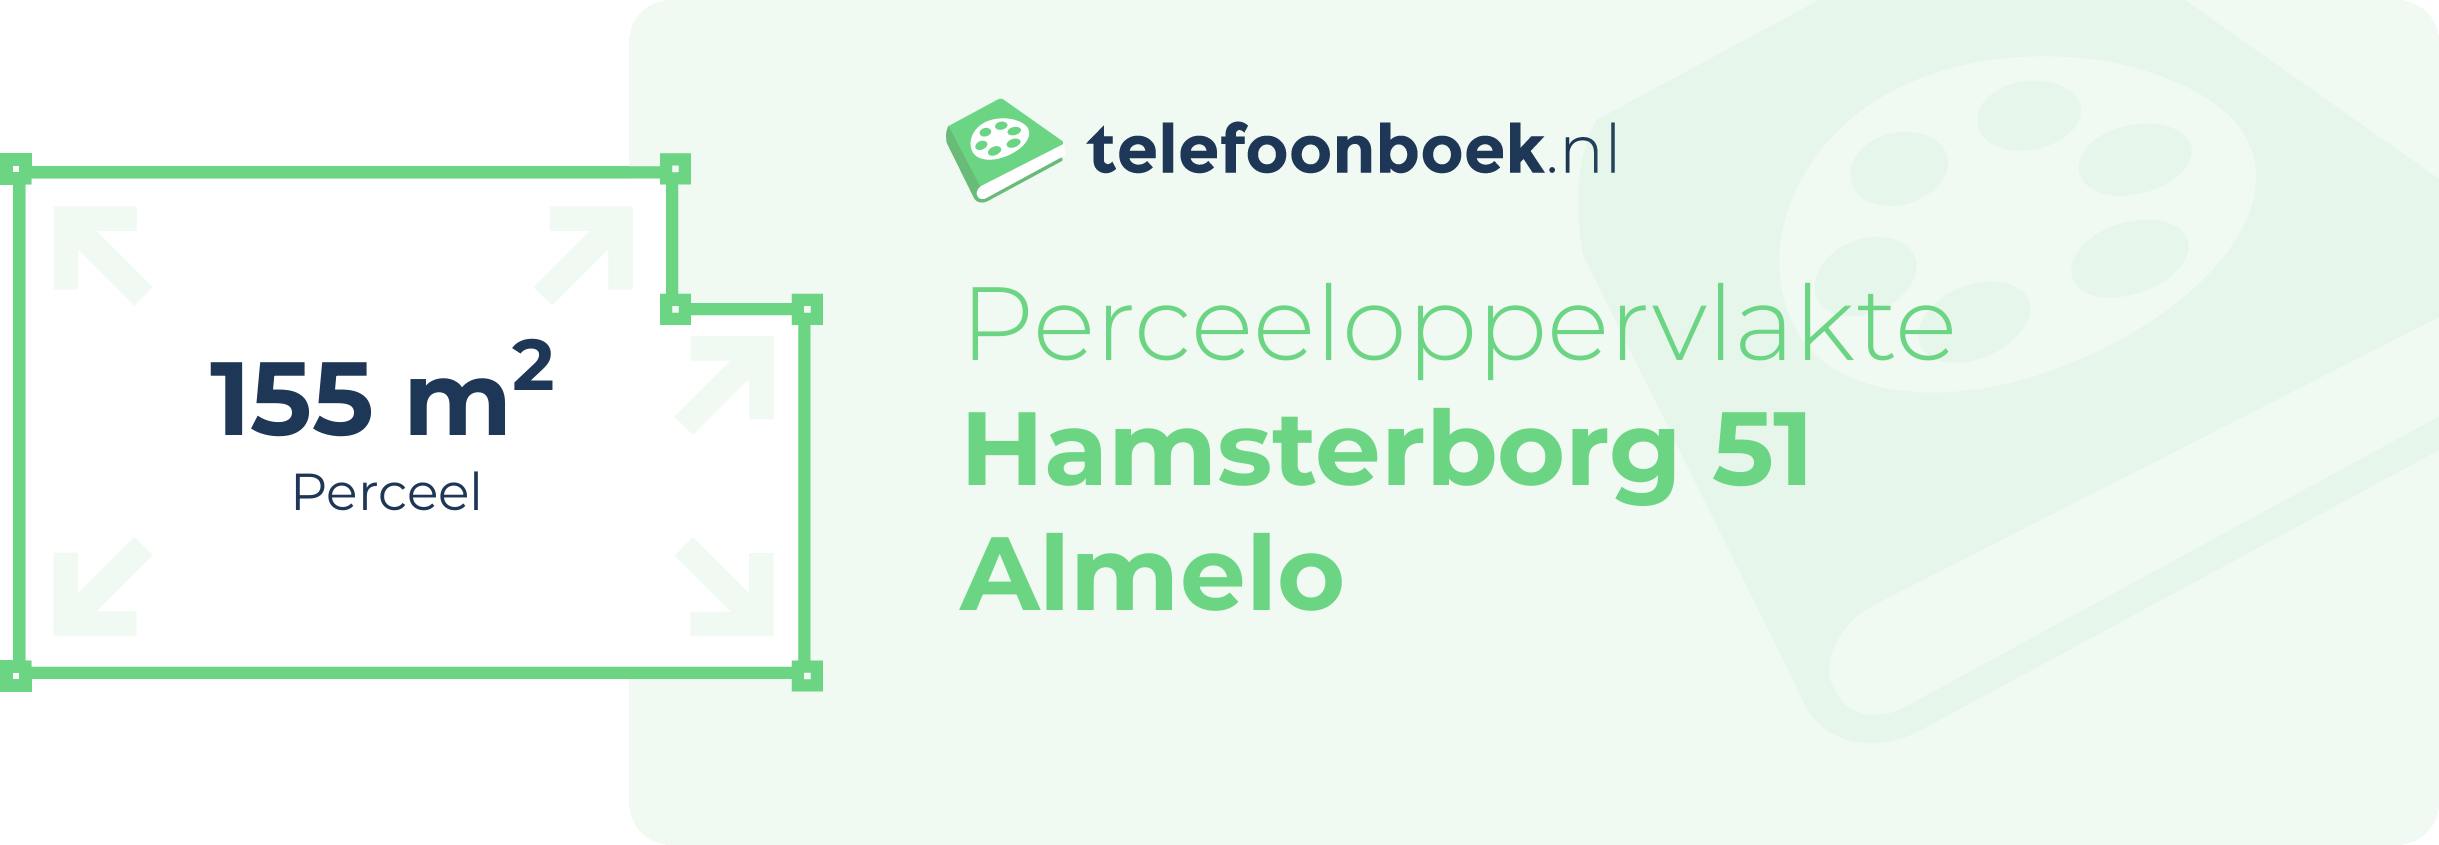 Perceeloppervlakte Hamsterborg 51 Almelo